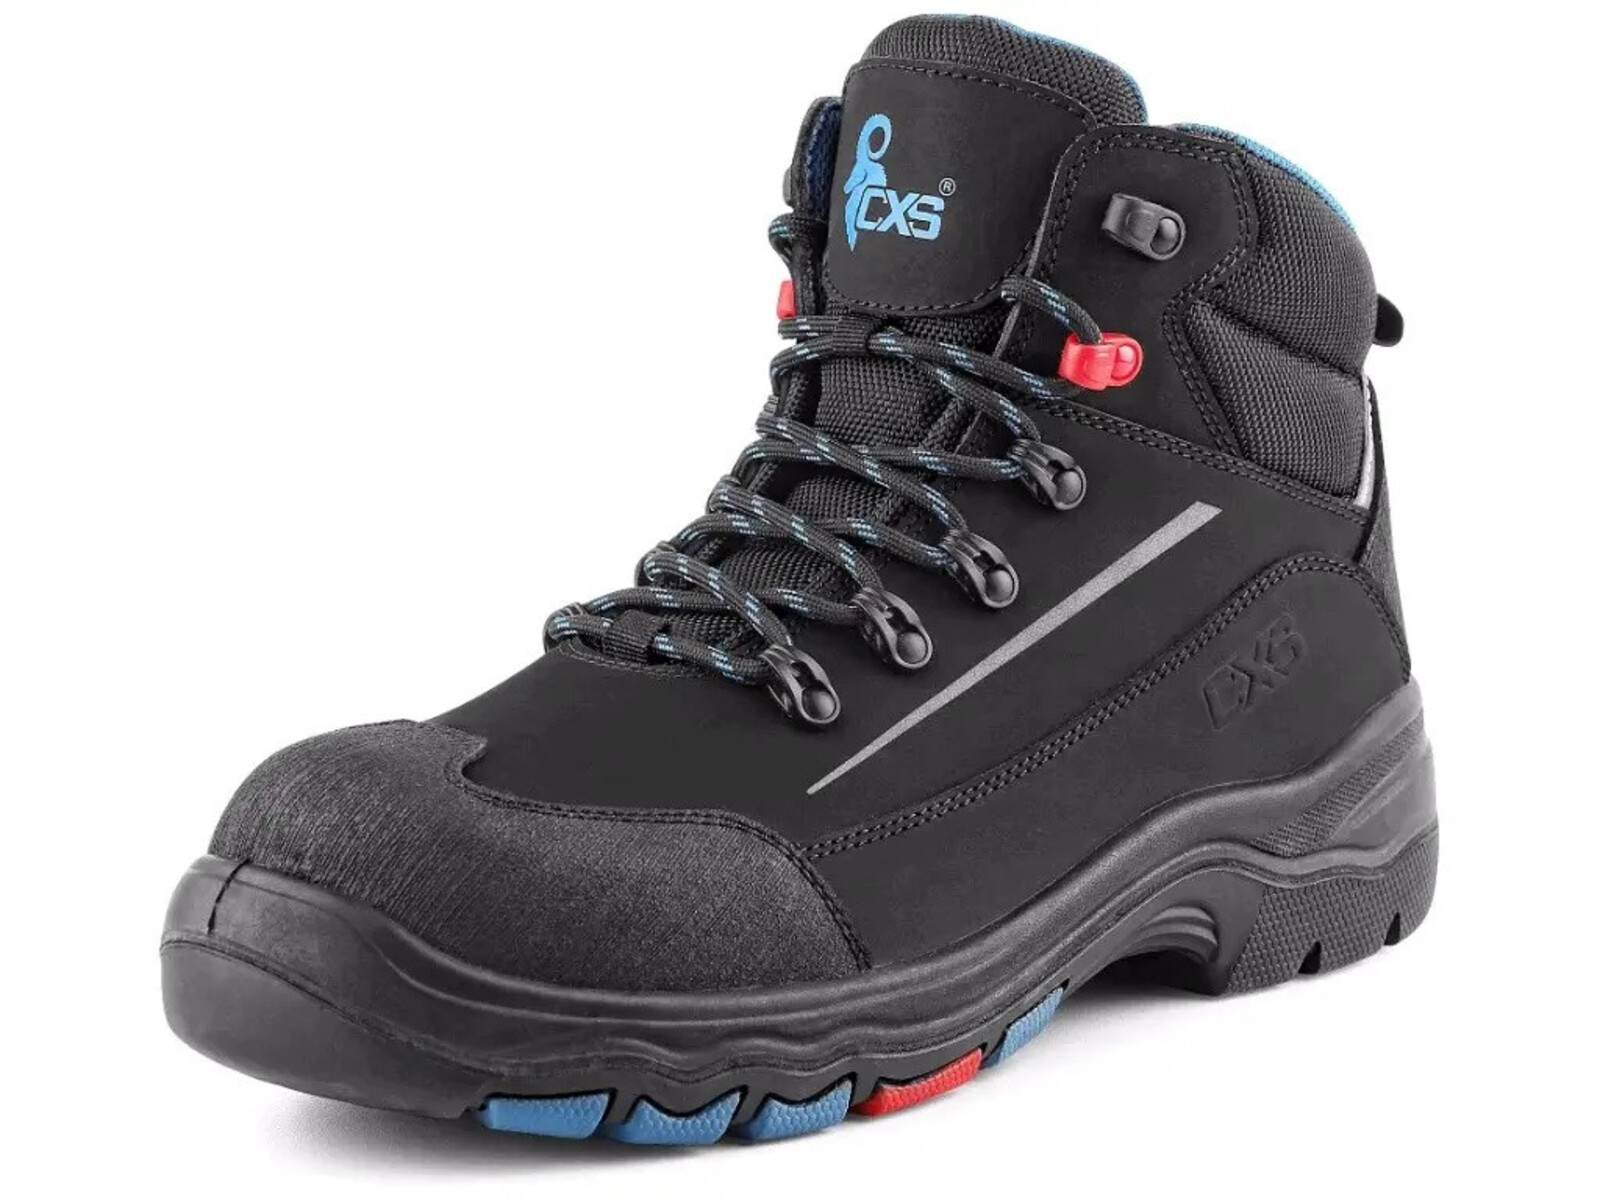 Bezpečnostná členková obuv CXS Land Senja S3S FO HRO SC SR - veľkosť: 47, farba: čierna/modrá